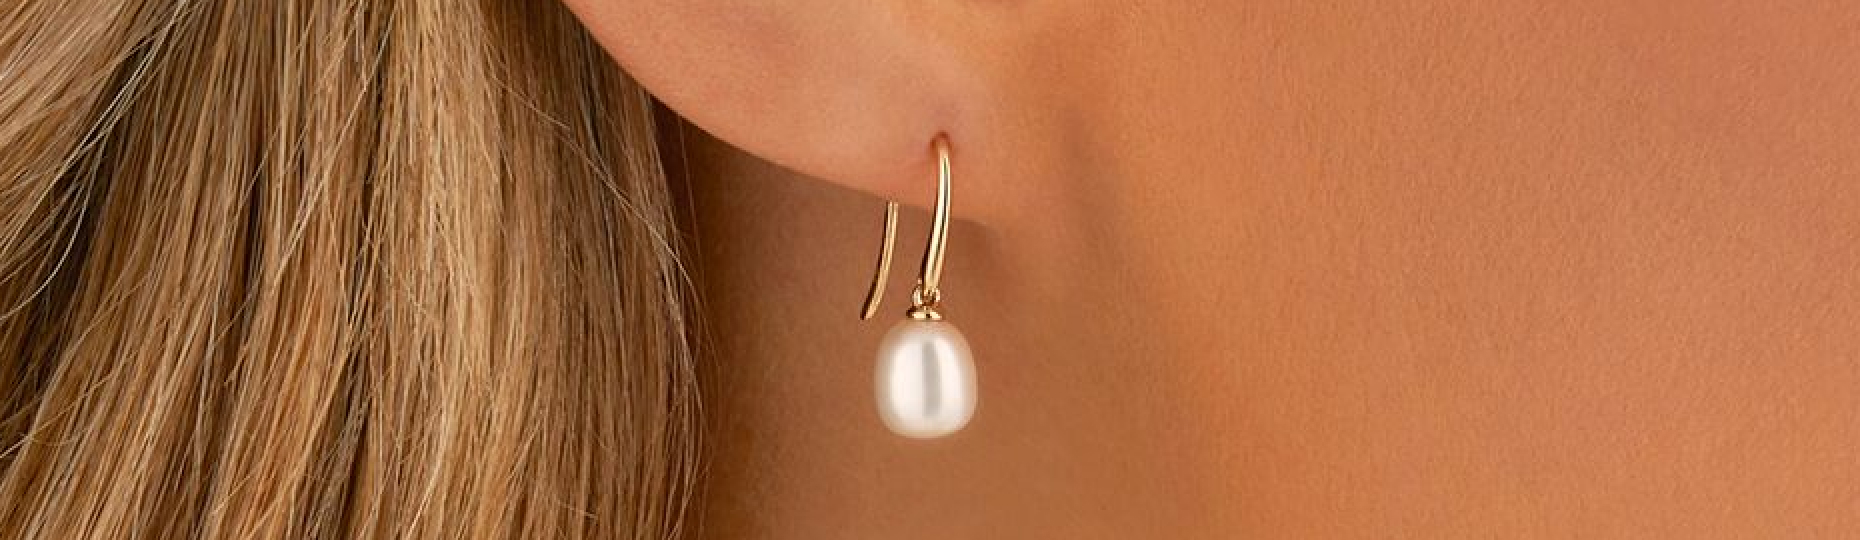 bridesmaid wearing pearl earrings